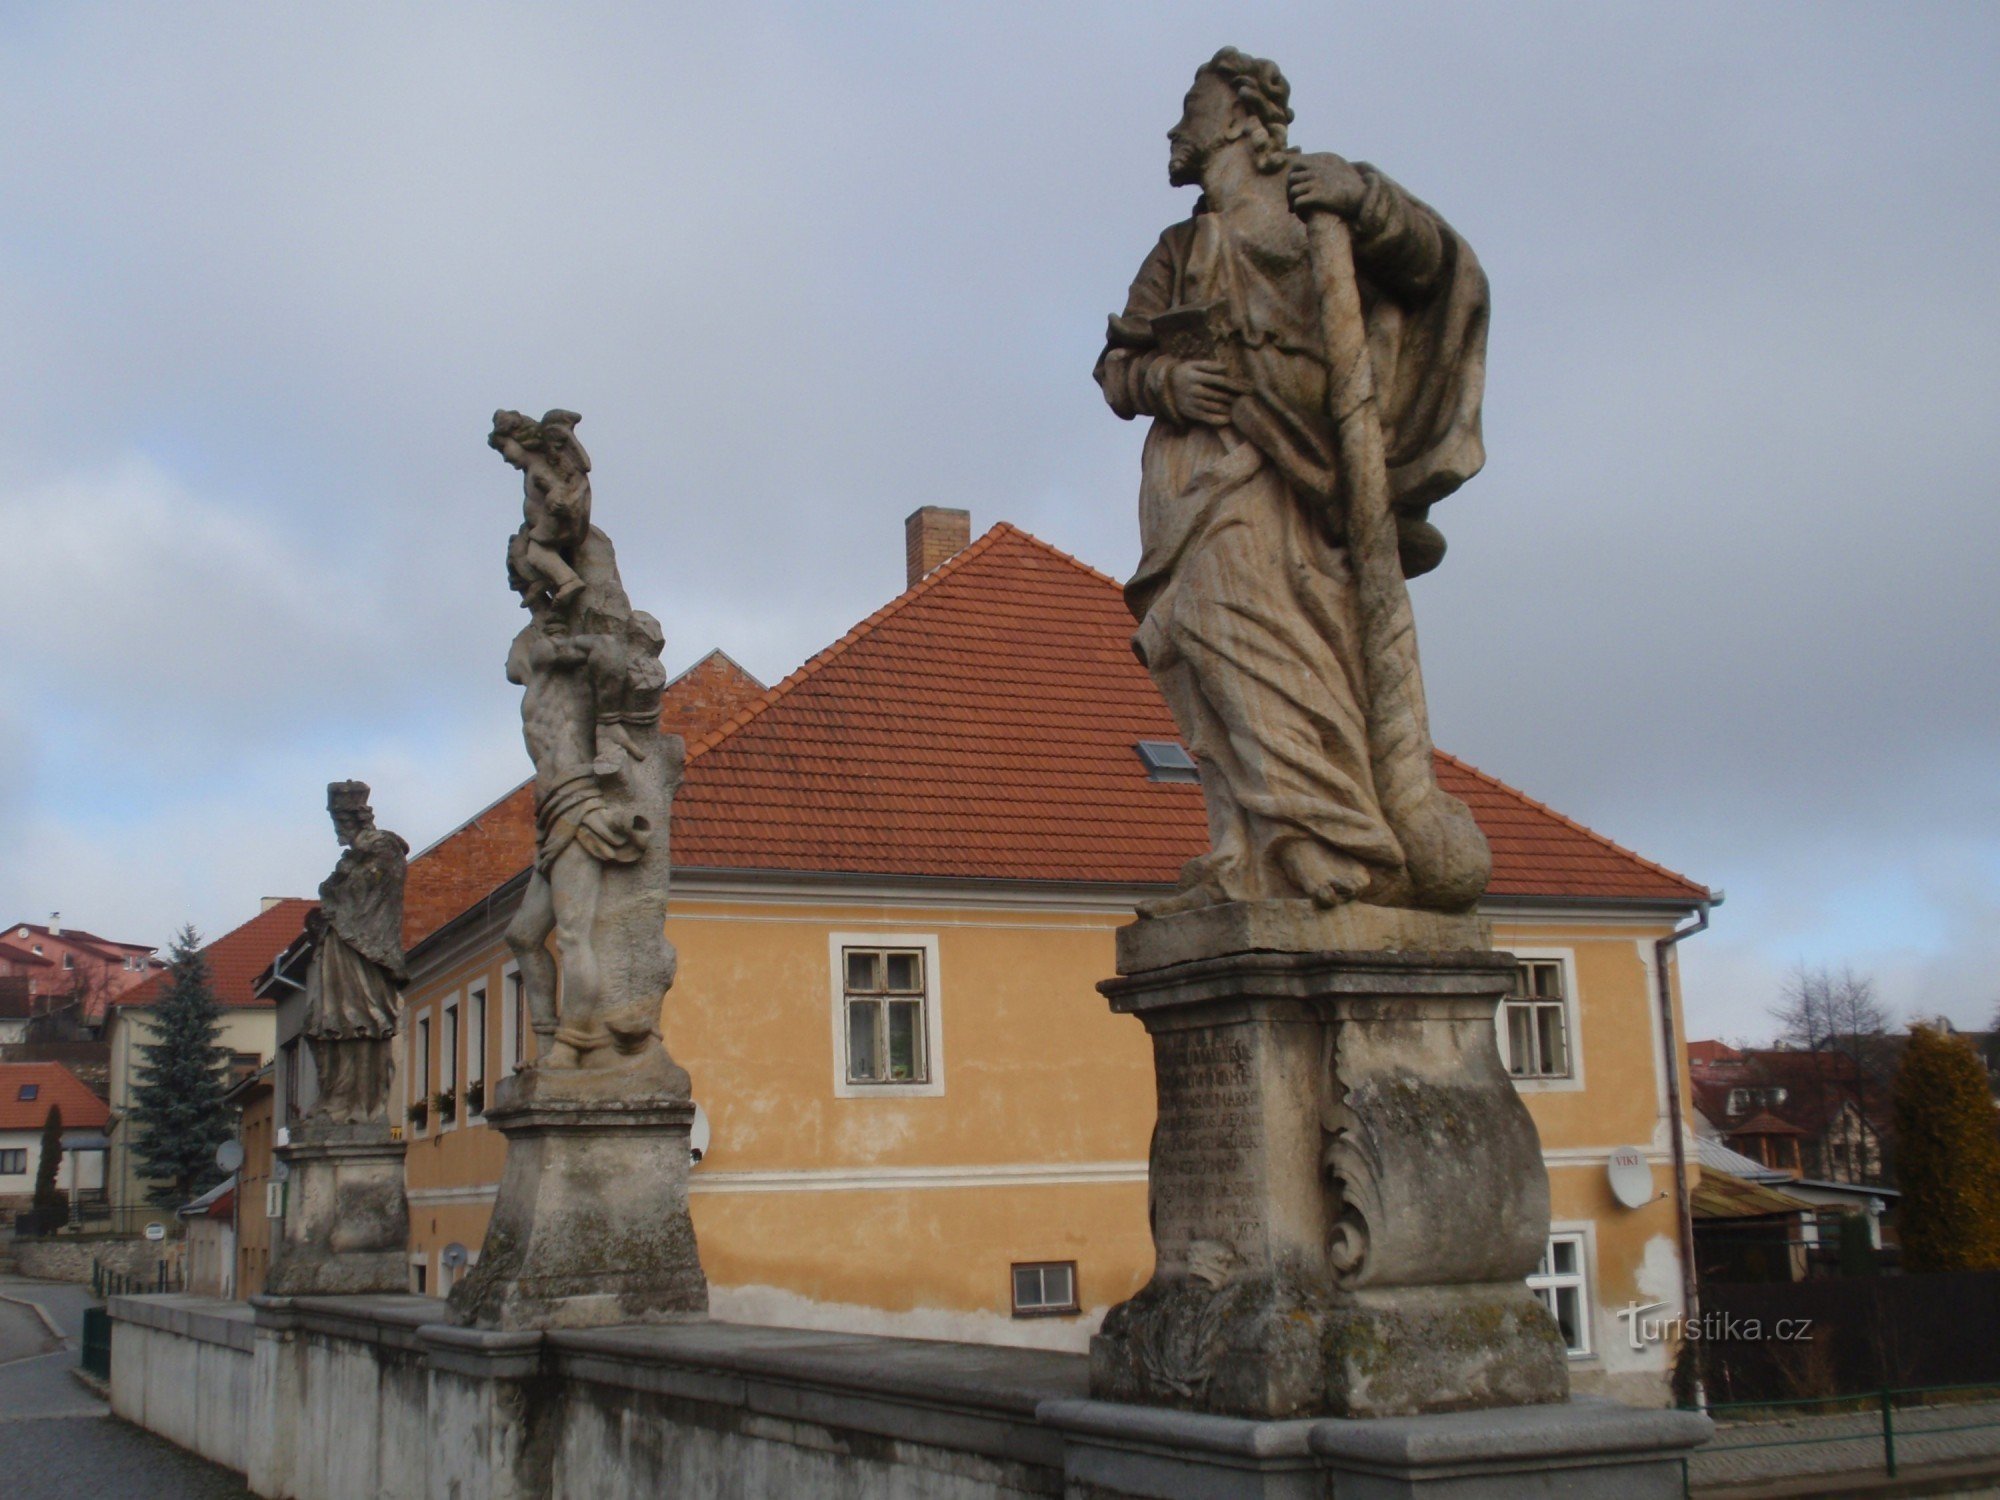 Trang trí điêu khắc của cây cầu dưới lâu đài ở Brtnice gần Jihlava